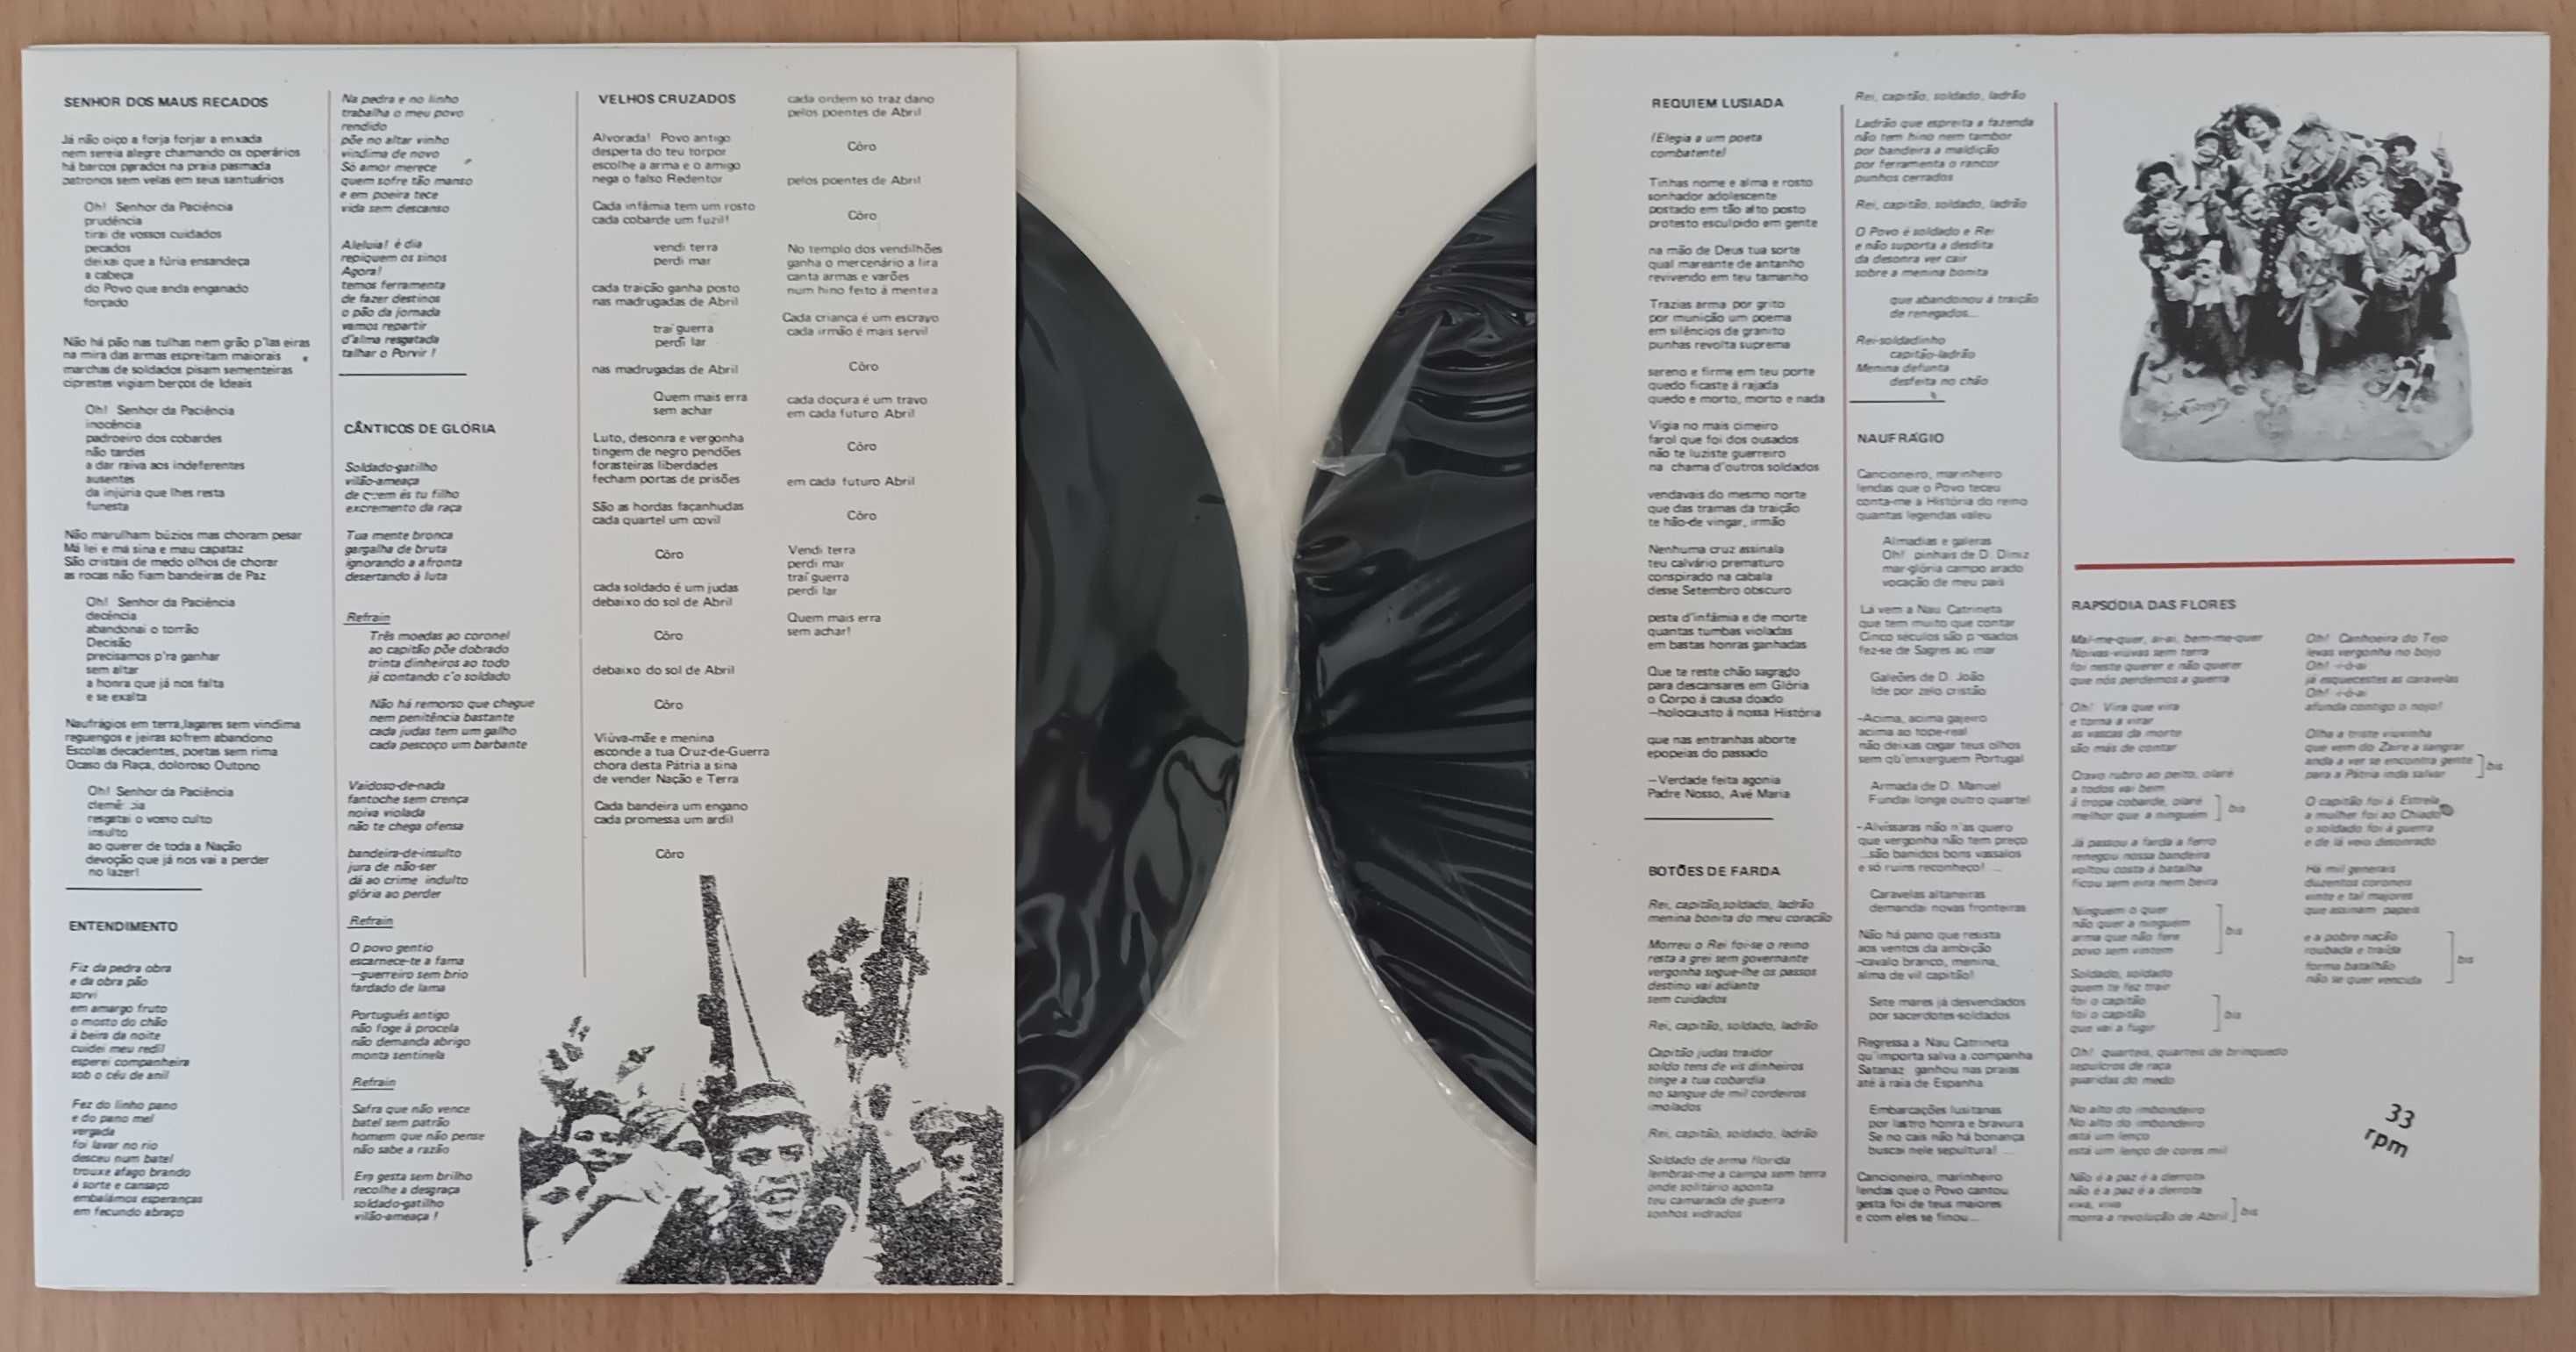 Cid & Rolando Requiem Lusiada (2 x single] 1975 Direita Nacionalista